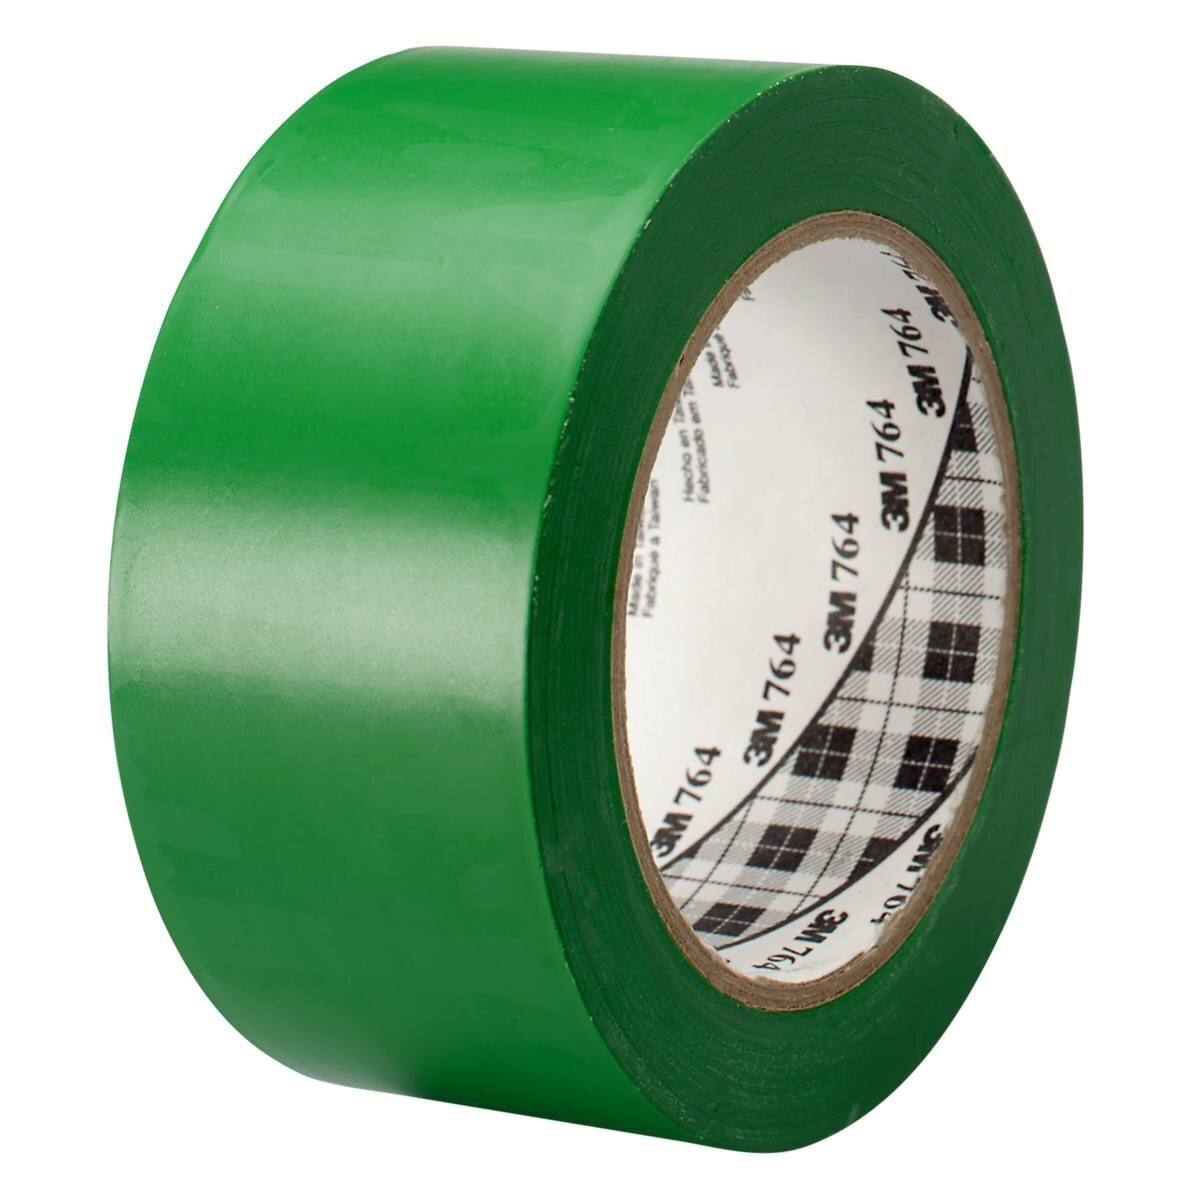 3M Nastro adesivo multiuso in PVC 764, verde, 50 mm x 33 m, confezionato singolarmente in un pratico imballaggio